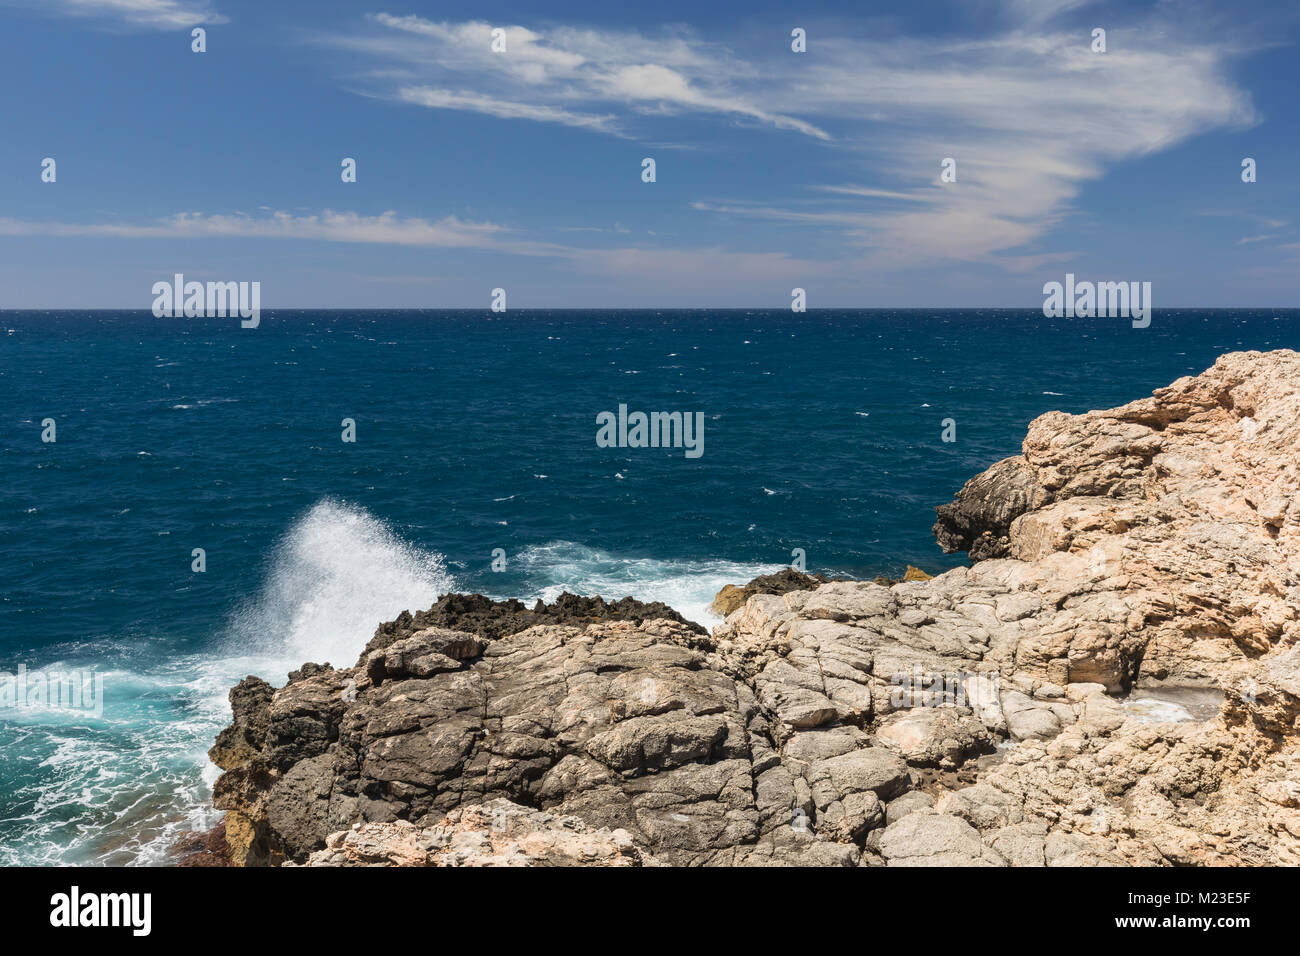 Una imagen que muestra el agua blanca espuma del mar en una costa rocosa shot en Anchor Bay, Malta. Foto de stock